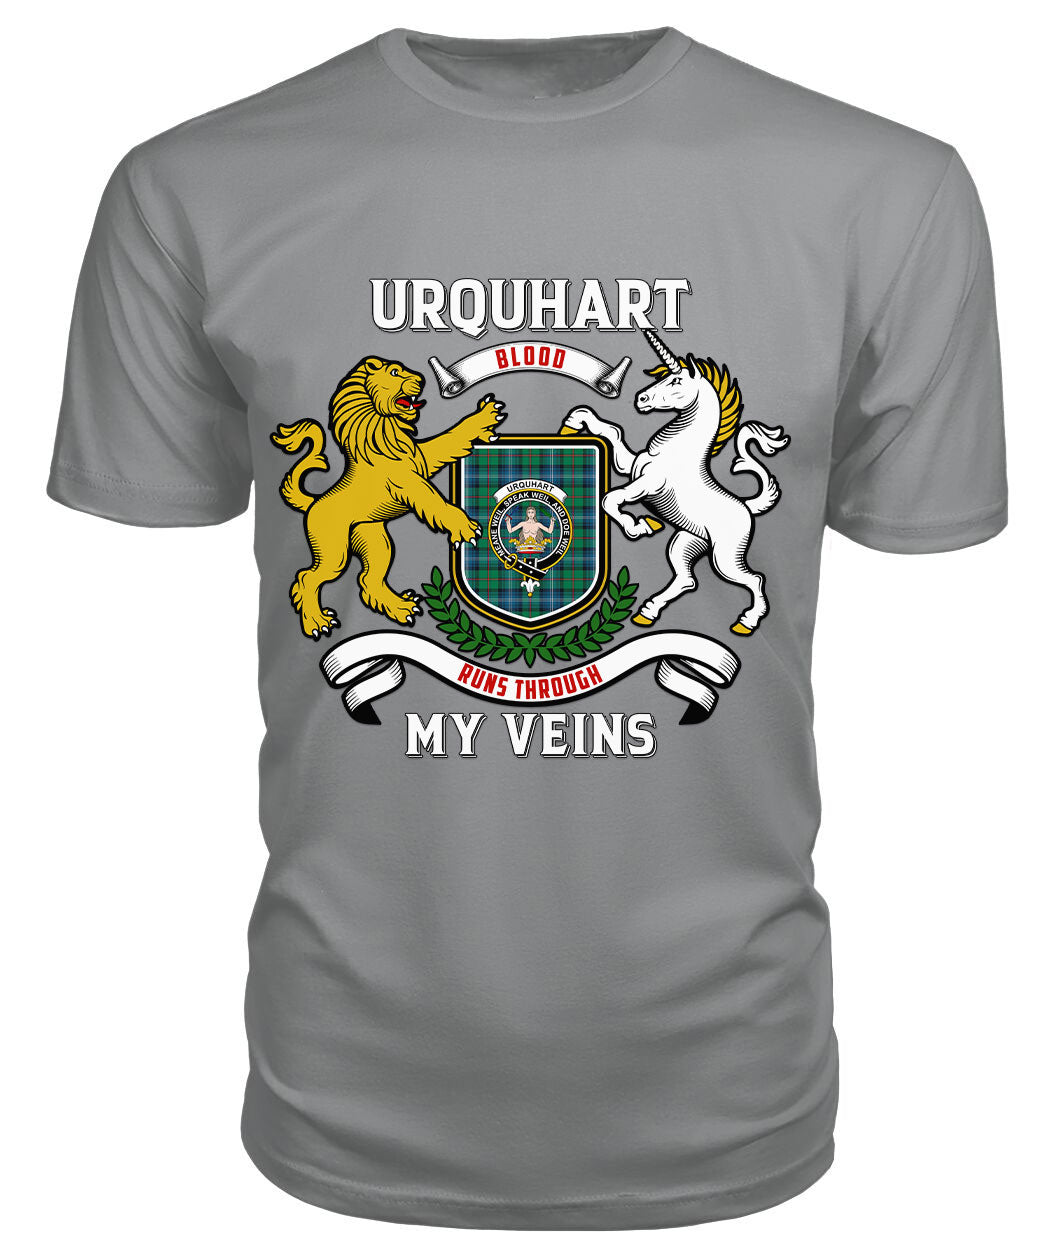 Urquhart Ancient Tartan Crest 2D T-shirt - Blood Runs Through My Veins Style